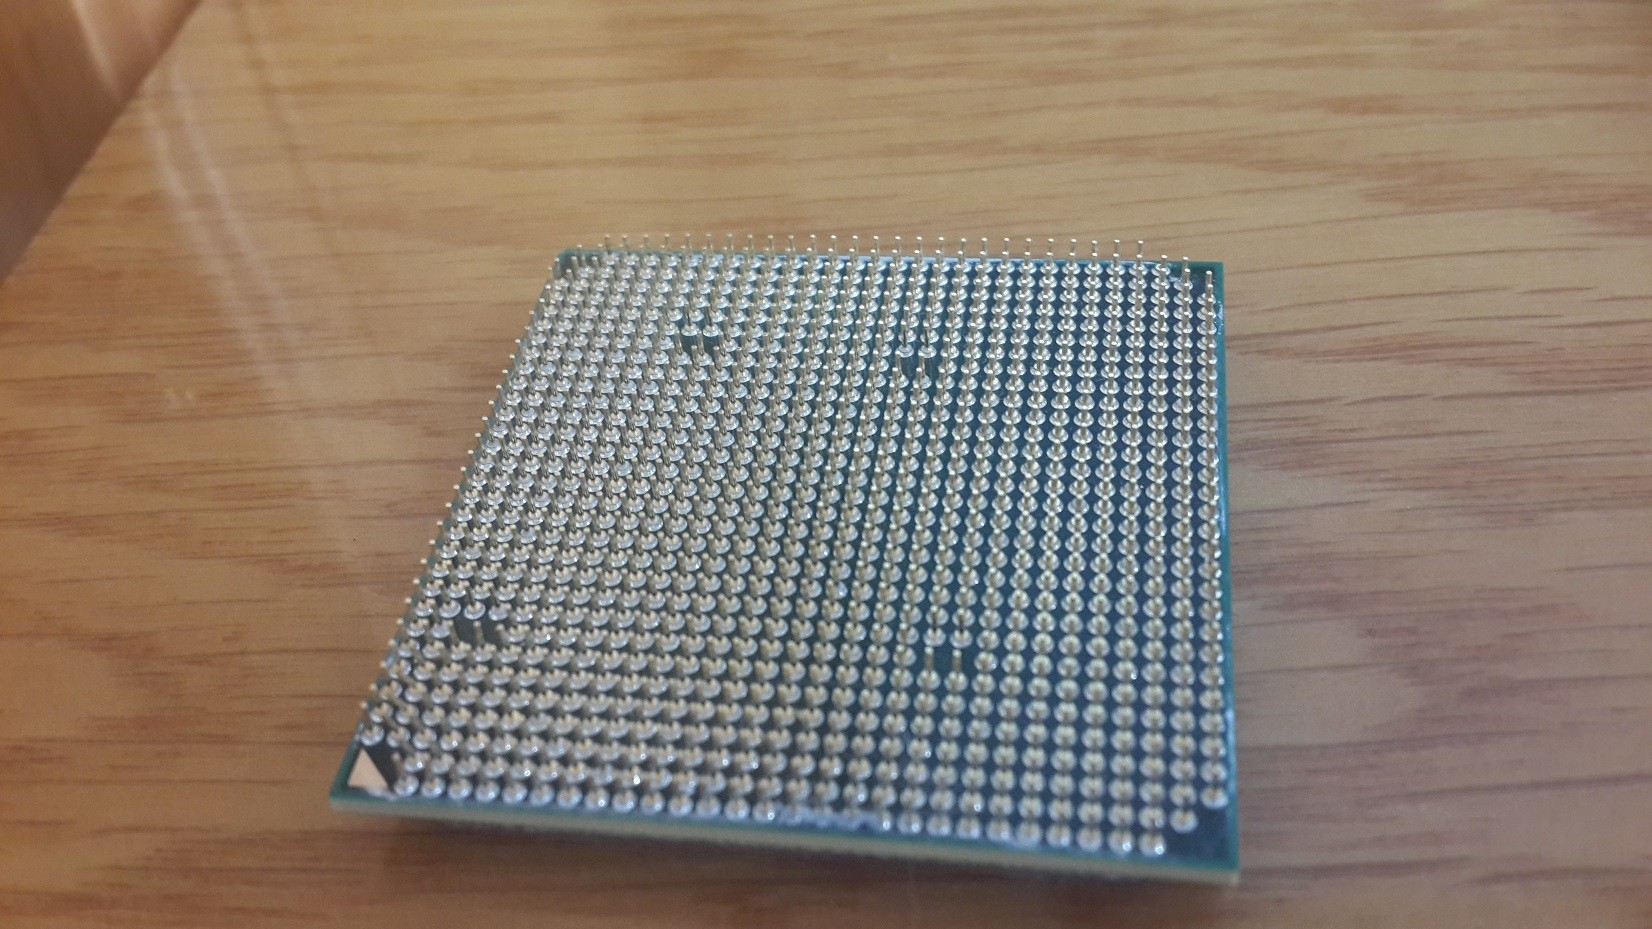 Satılık AMD FX8320